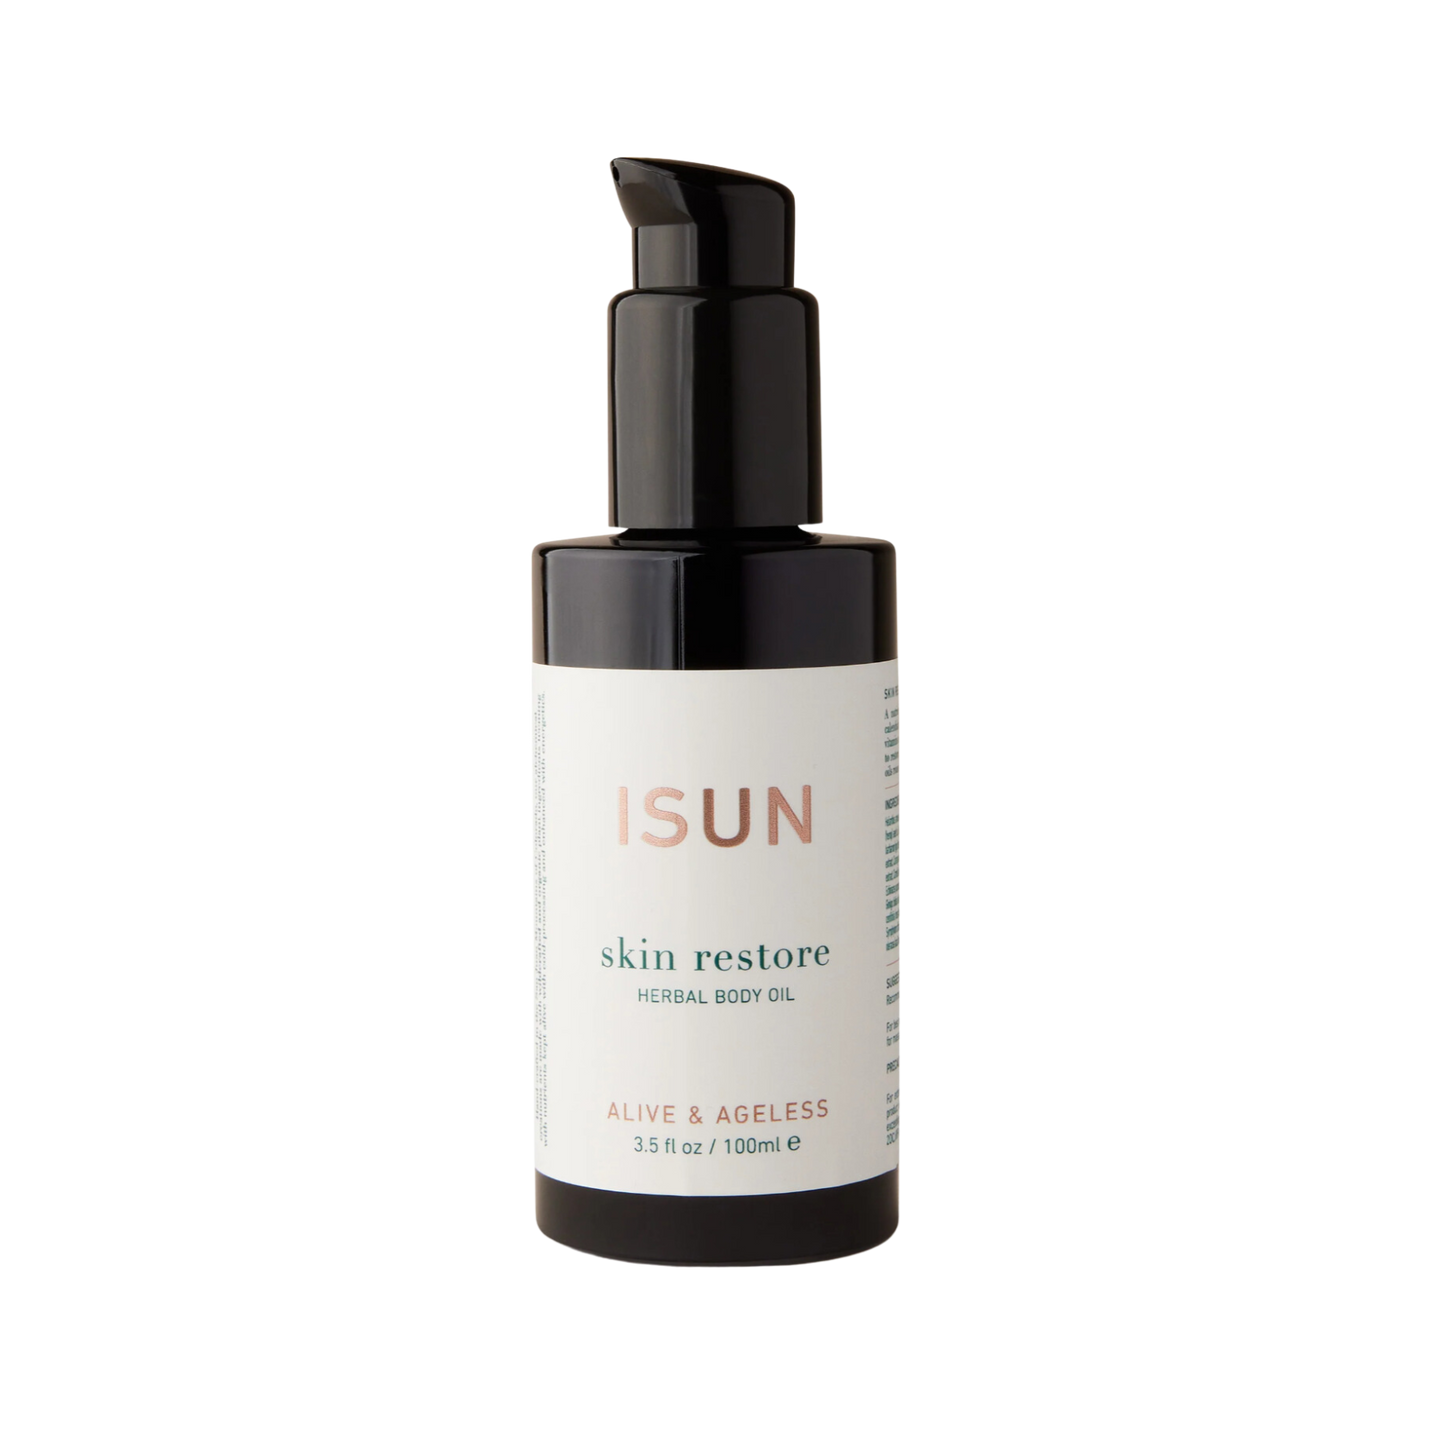 ISUN Skin Restore Nourishing Herbal Body Oil